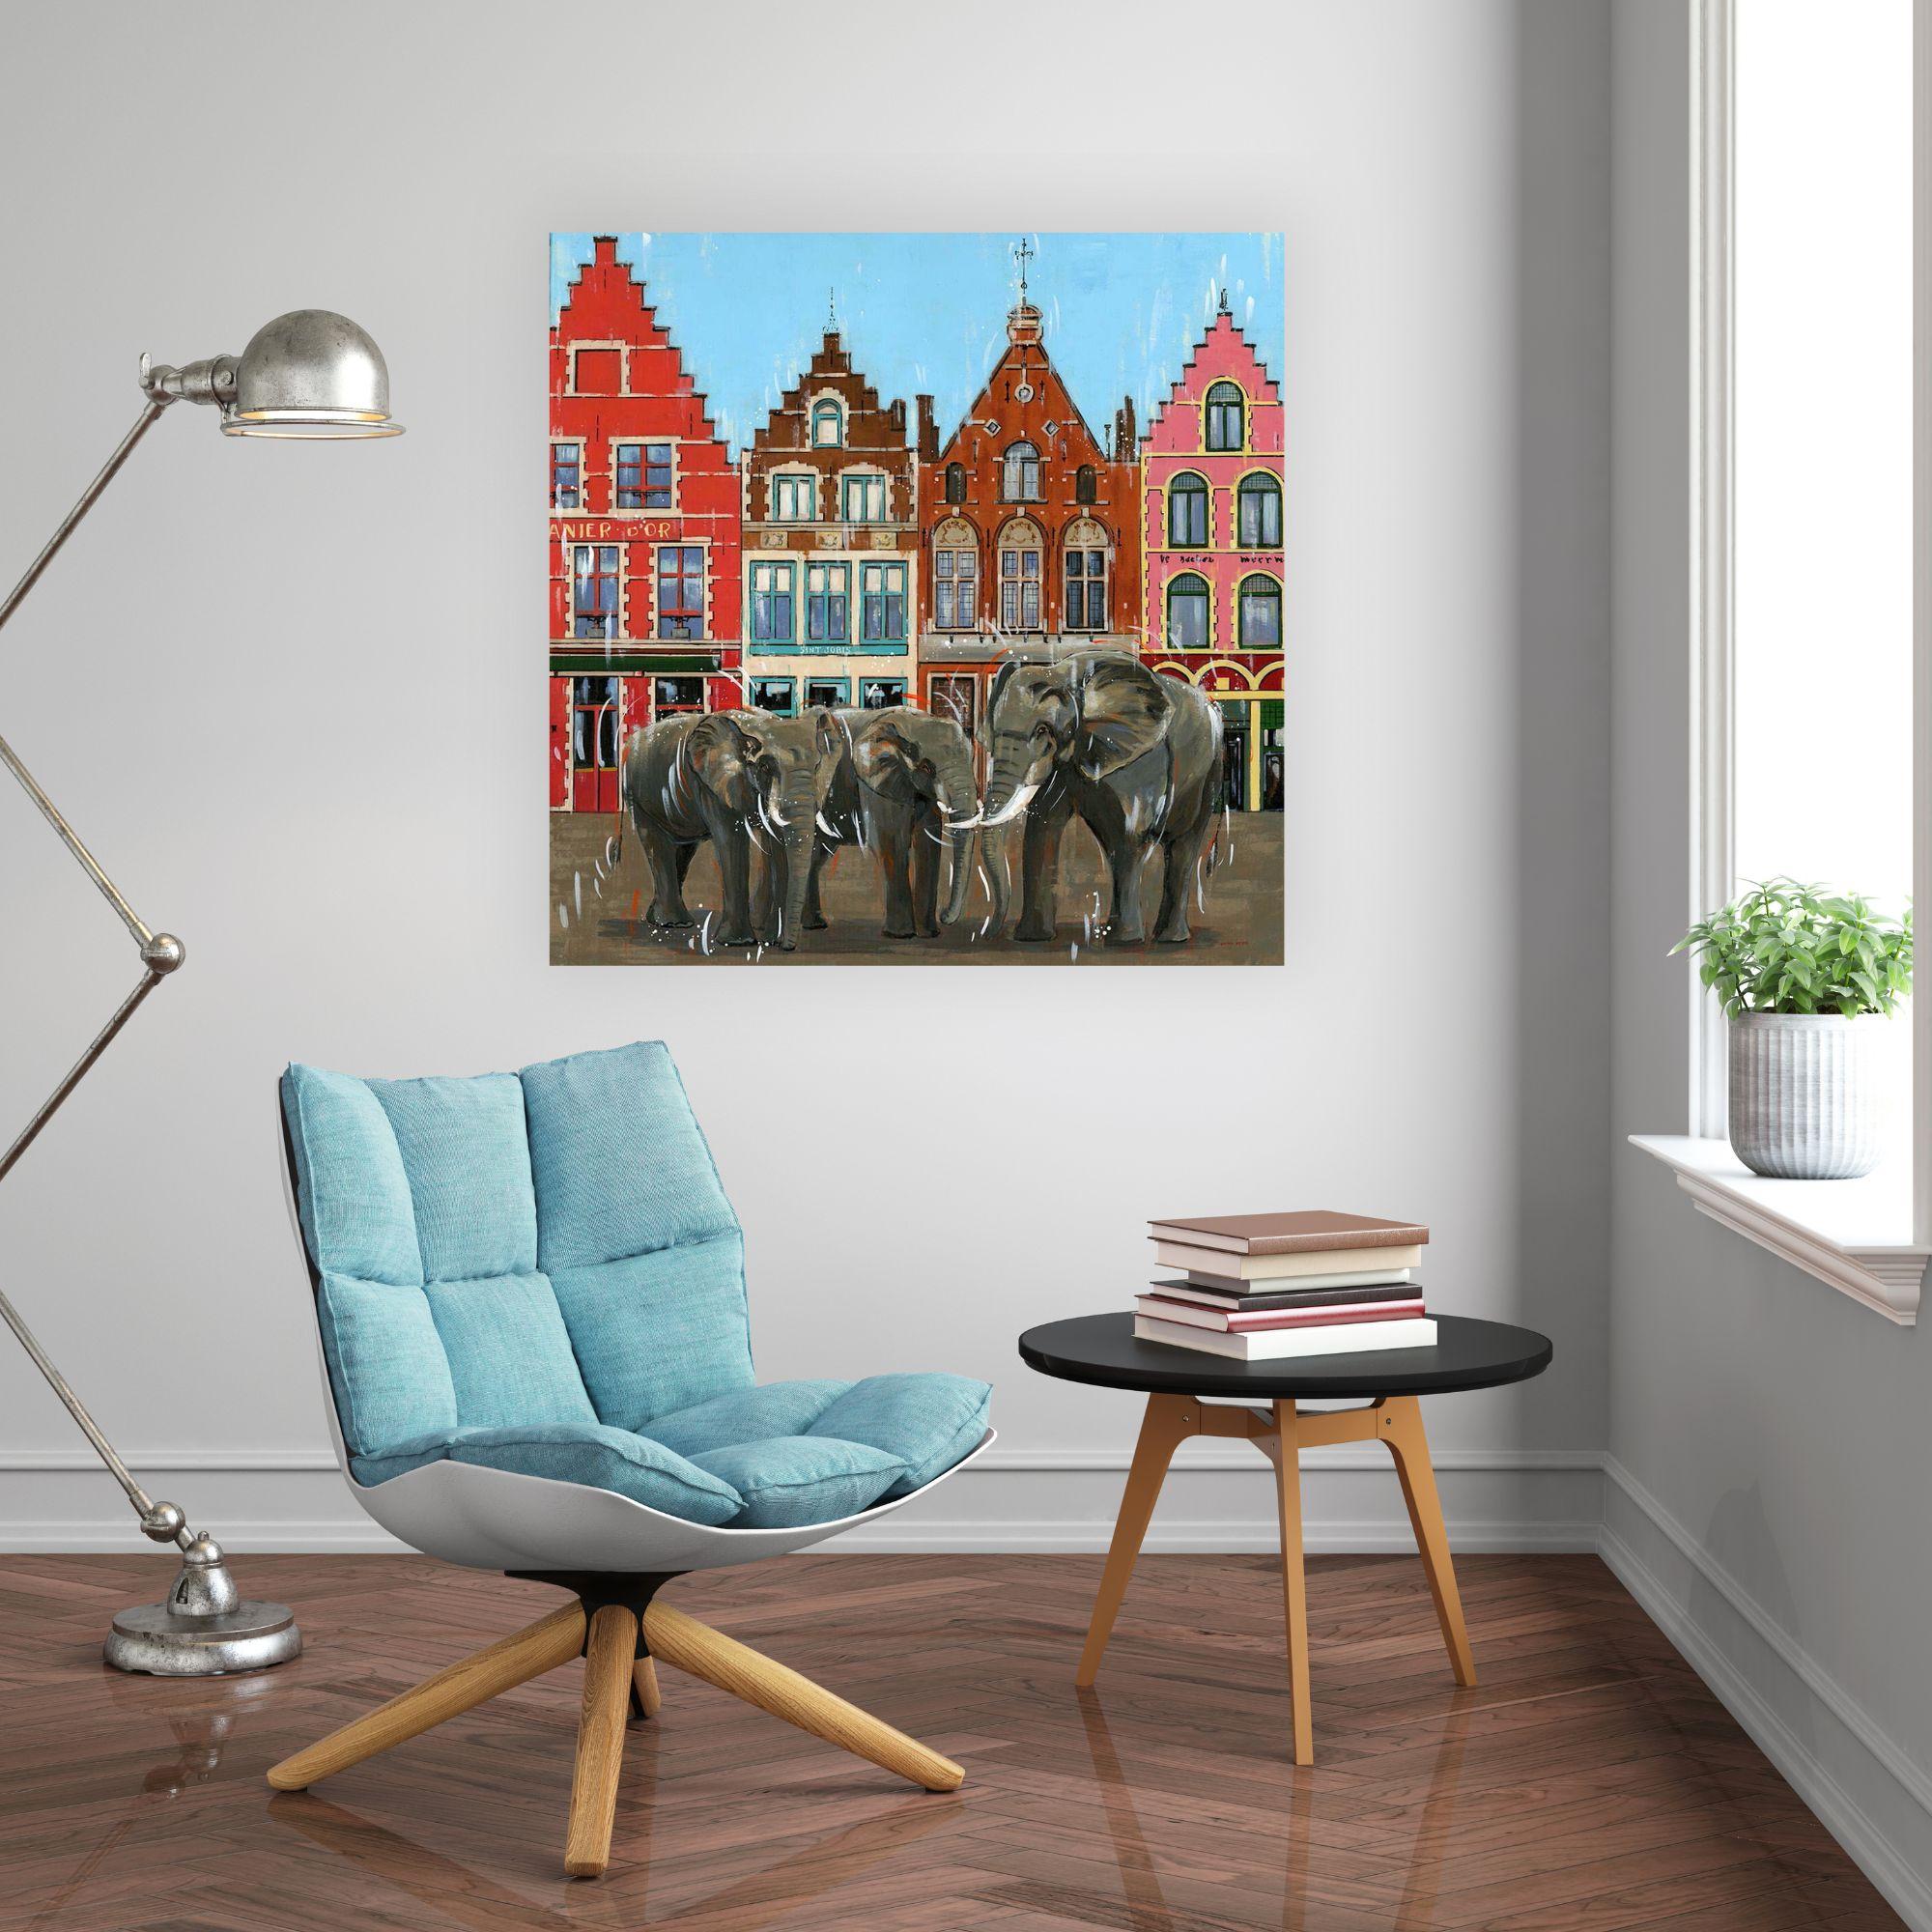 Bruges-architecture originale paysage urbain faune et flore peinture à l'huile- art contemporain - Painting de Nathan Neven